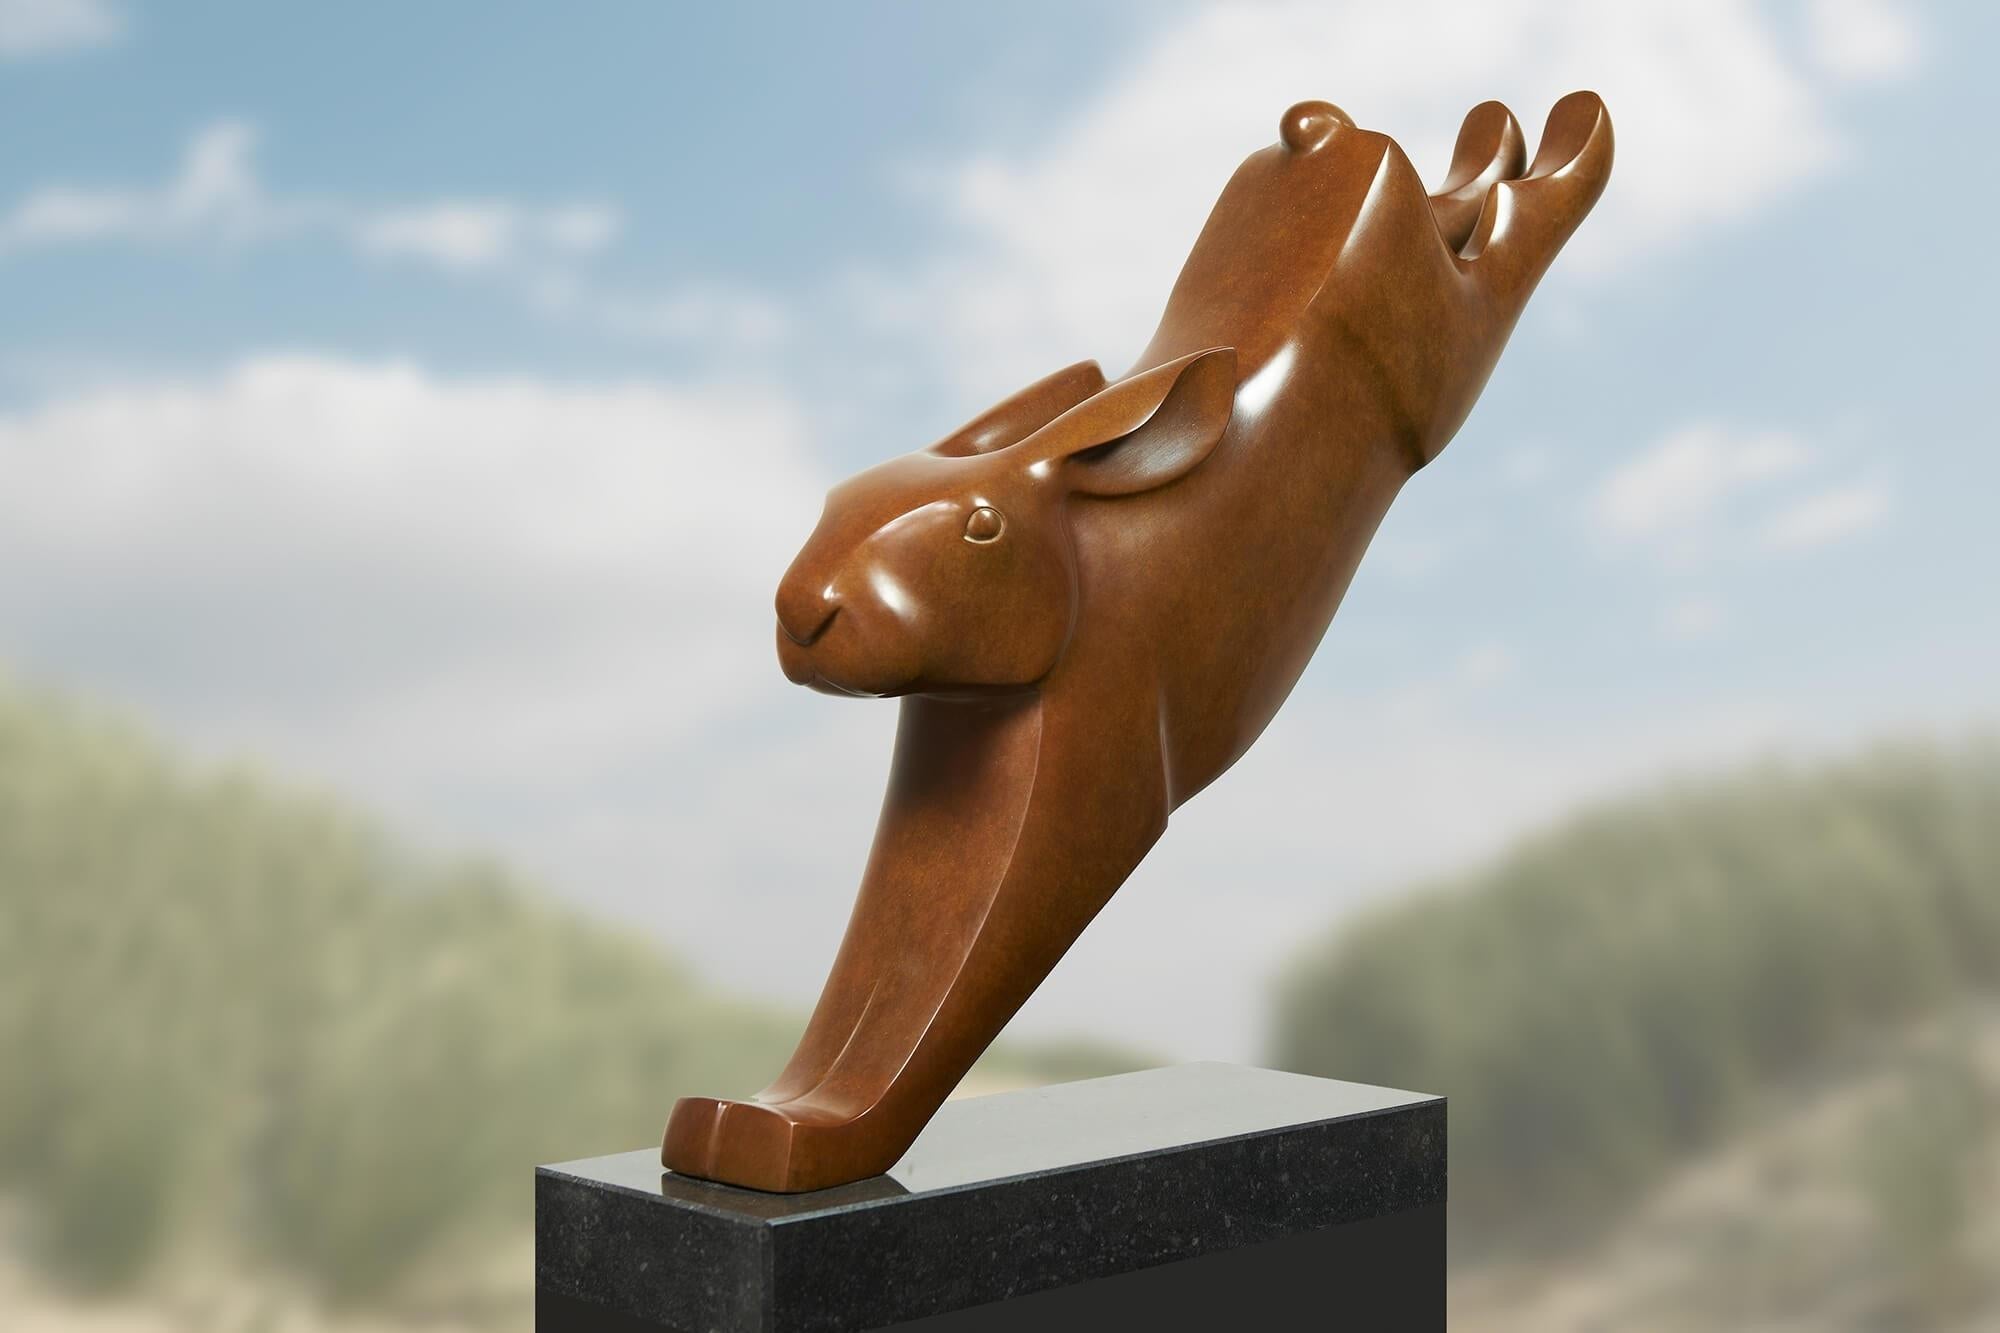 Springende Haas Springender Hase Bronze Skulptur Tier Zeitgenössische Kunst
Evert den Hartog (geboren 1949 in Groot-Ammers, Niederlande) absolvierte eine Ausbildung zum Bildhauer an der Rotterdamer Akademie der Bildenden Künste. In den Jahren